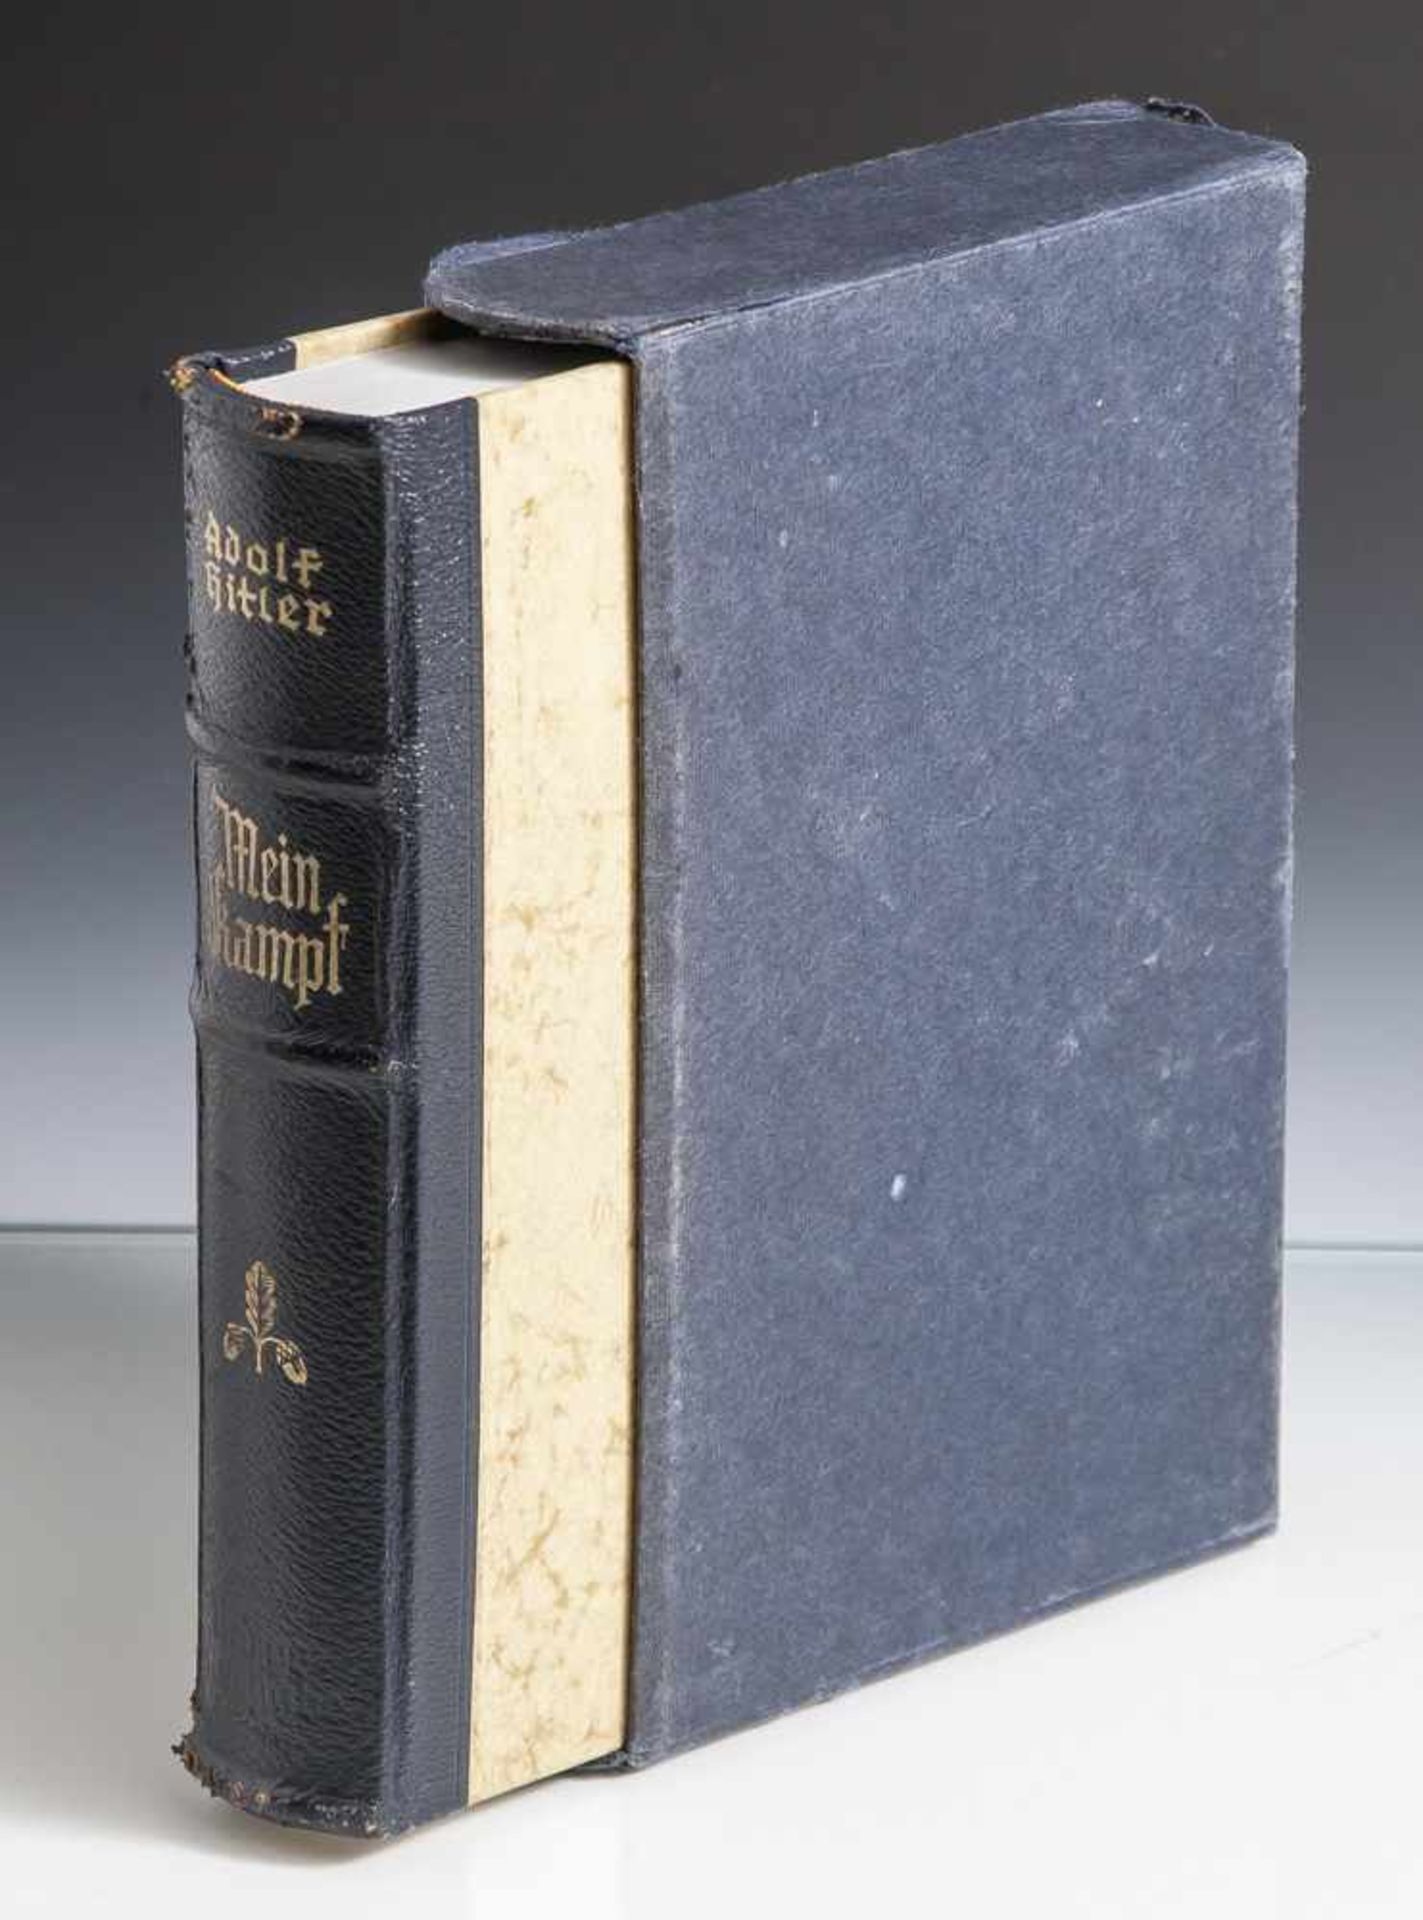 Hitler, Adolf, Mein Kampf, 524./528. Aufl., Zentralverlag der NSDAP, München 1940. Marmorierte